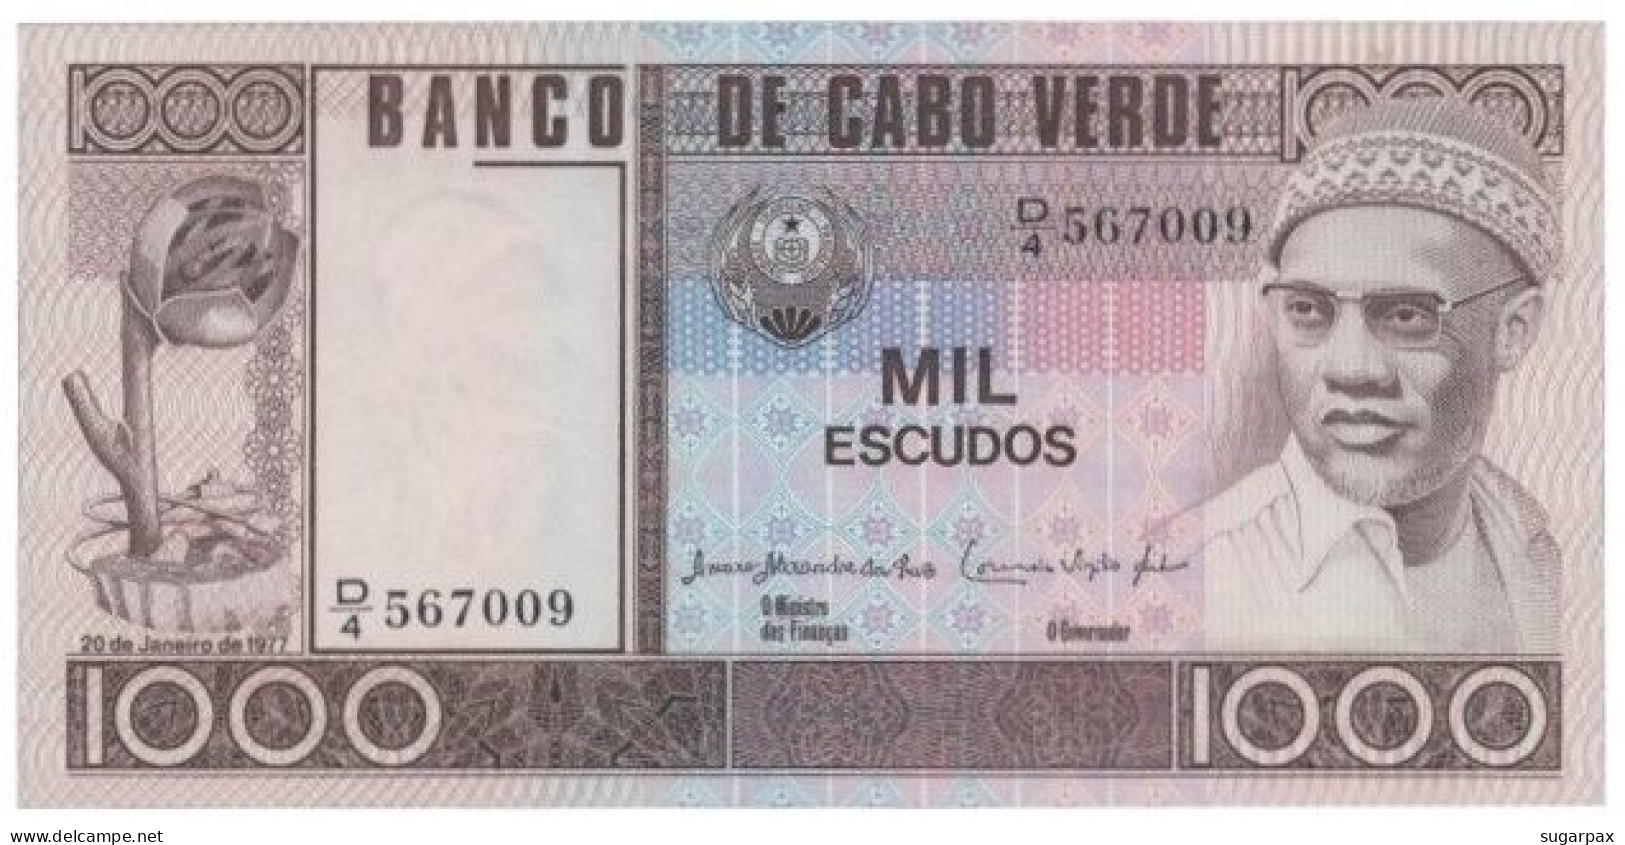 CAPE VERDE - 1000 ESCUDOS - 20.01.1977 - Pick 56.a - Unc. - Amilcar Cabral - 1 000 - Cabo Verde